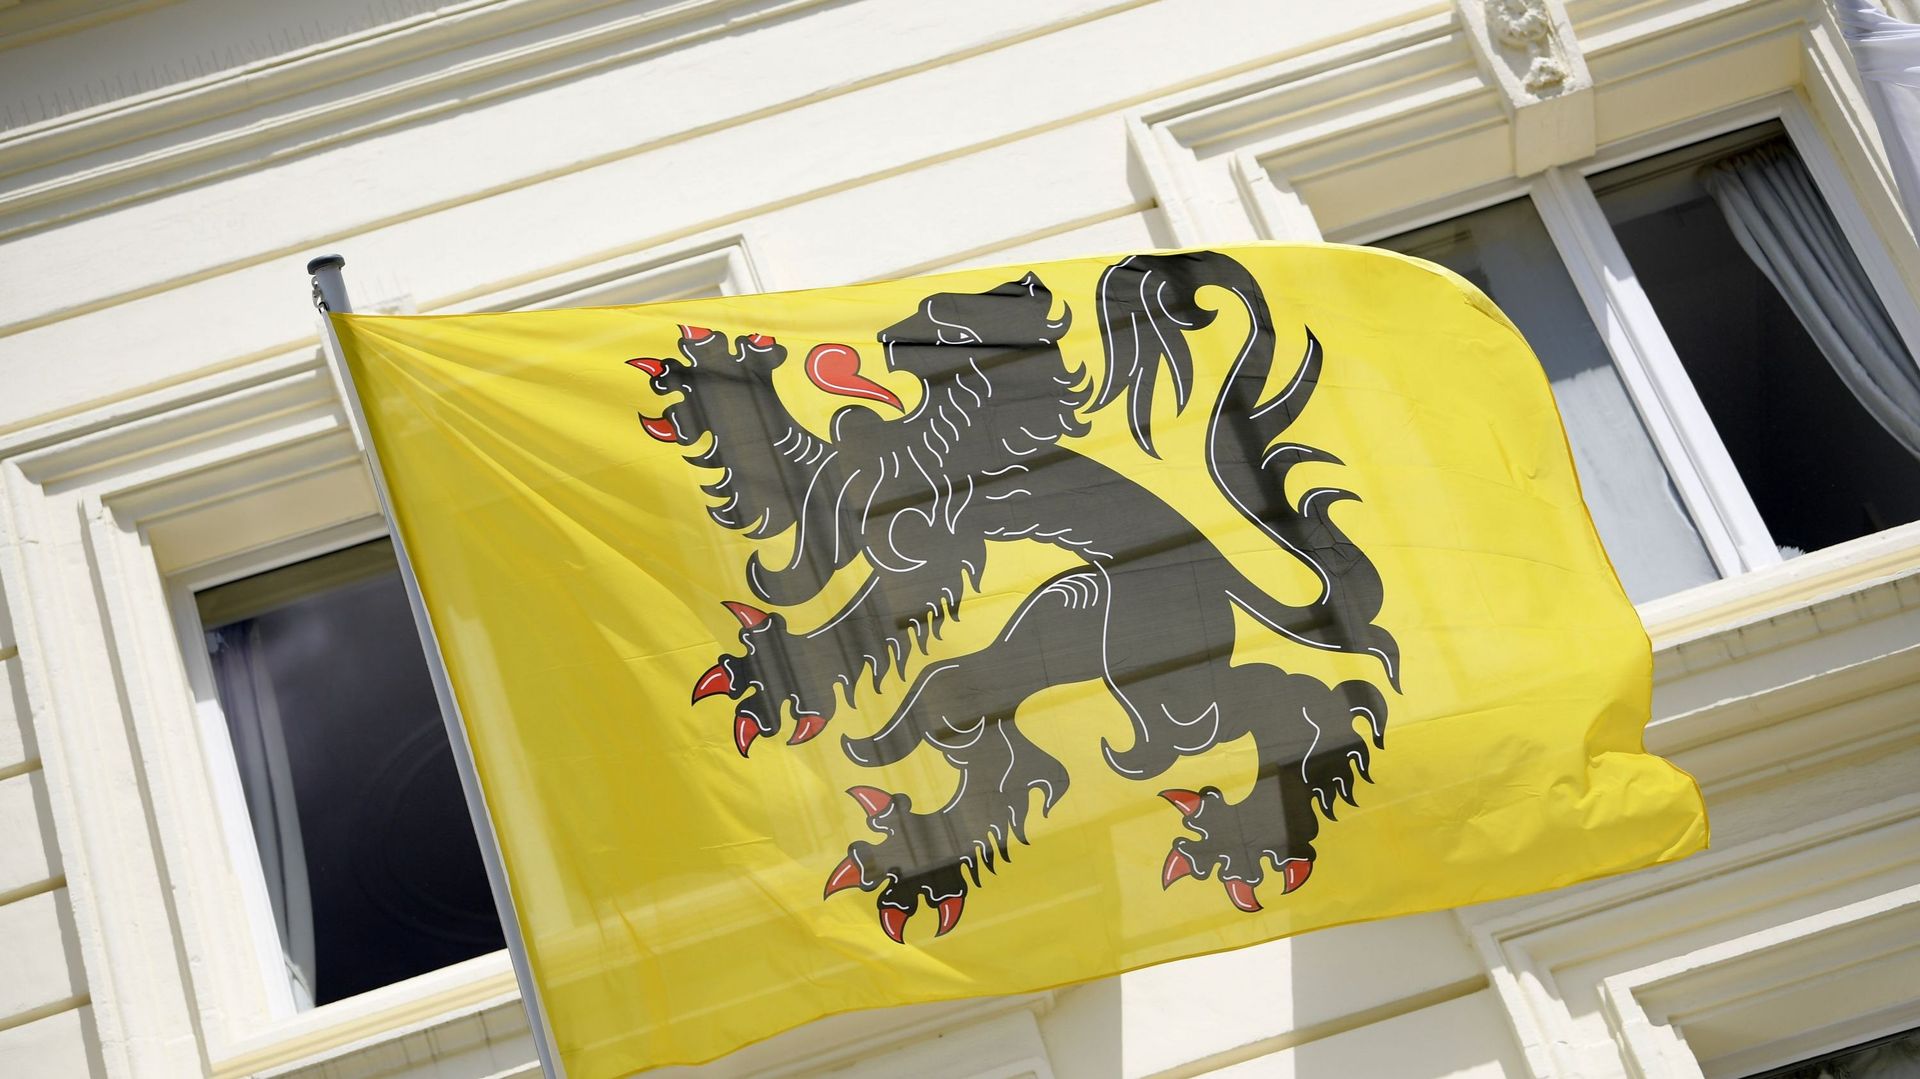 La photo d'illustration montre le drapeau de la Flandre lors de la cérémonie de remise des décorations 'Vlaamse Eretekens' de la communauté flamande lors des célébrations à l'occasion de la fête régionale flamande, samedi 11 juillet 2020 à Errerahuis à Br